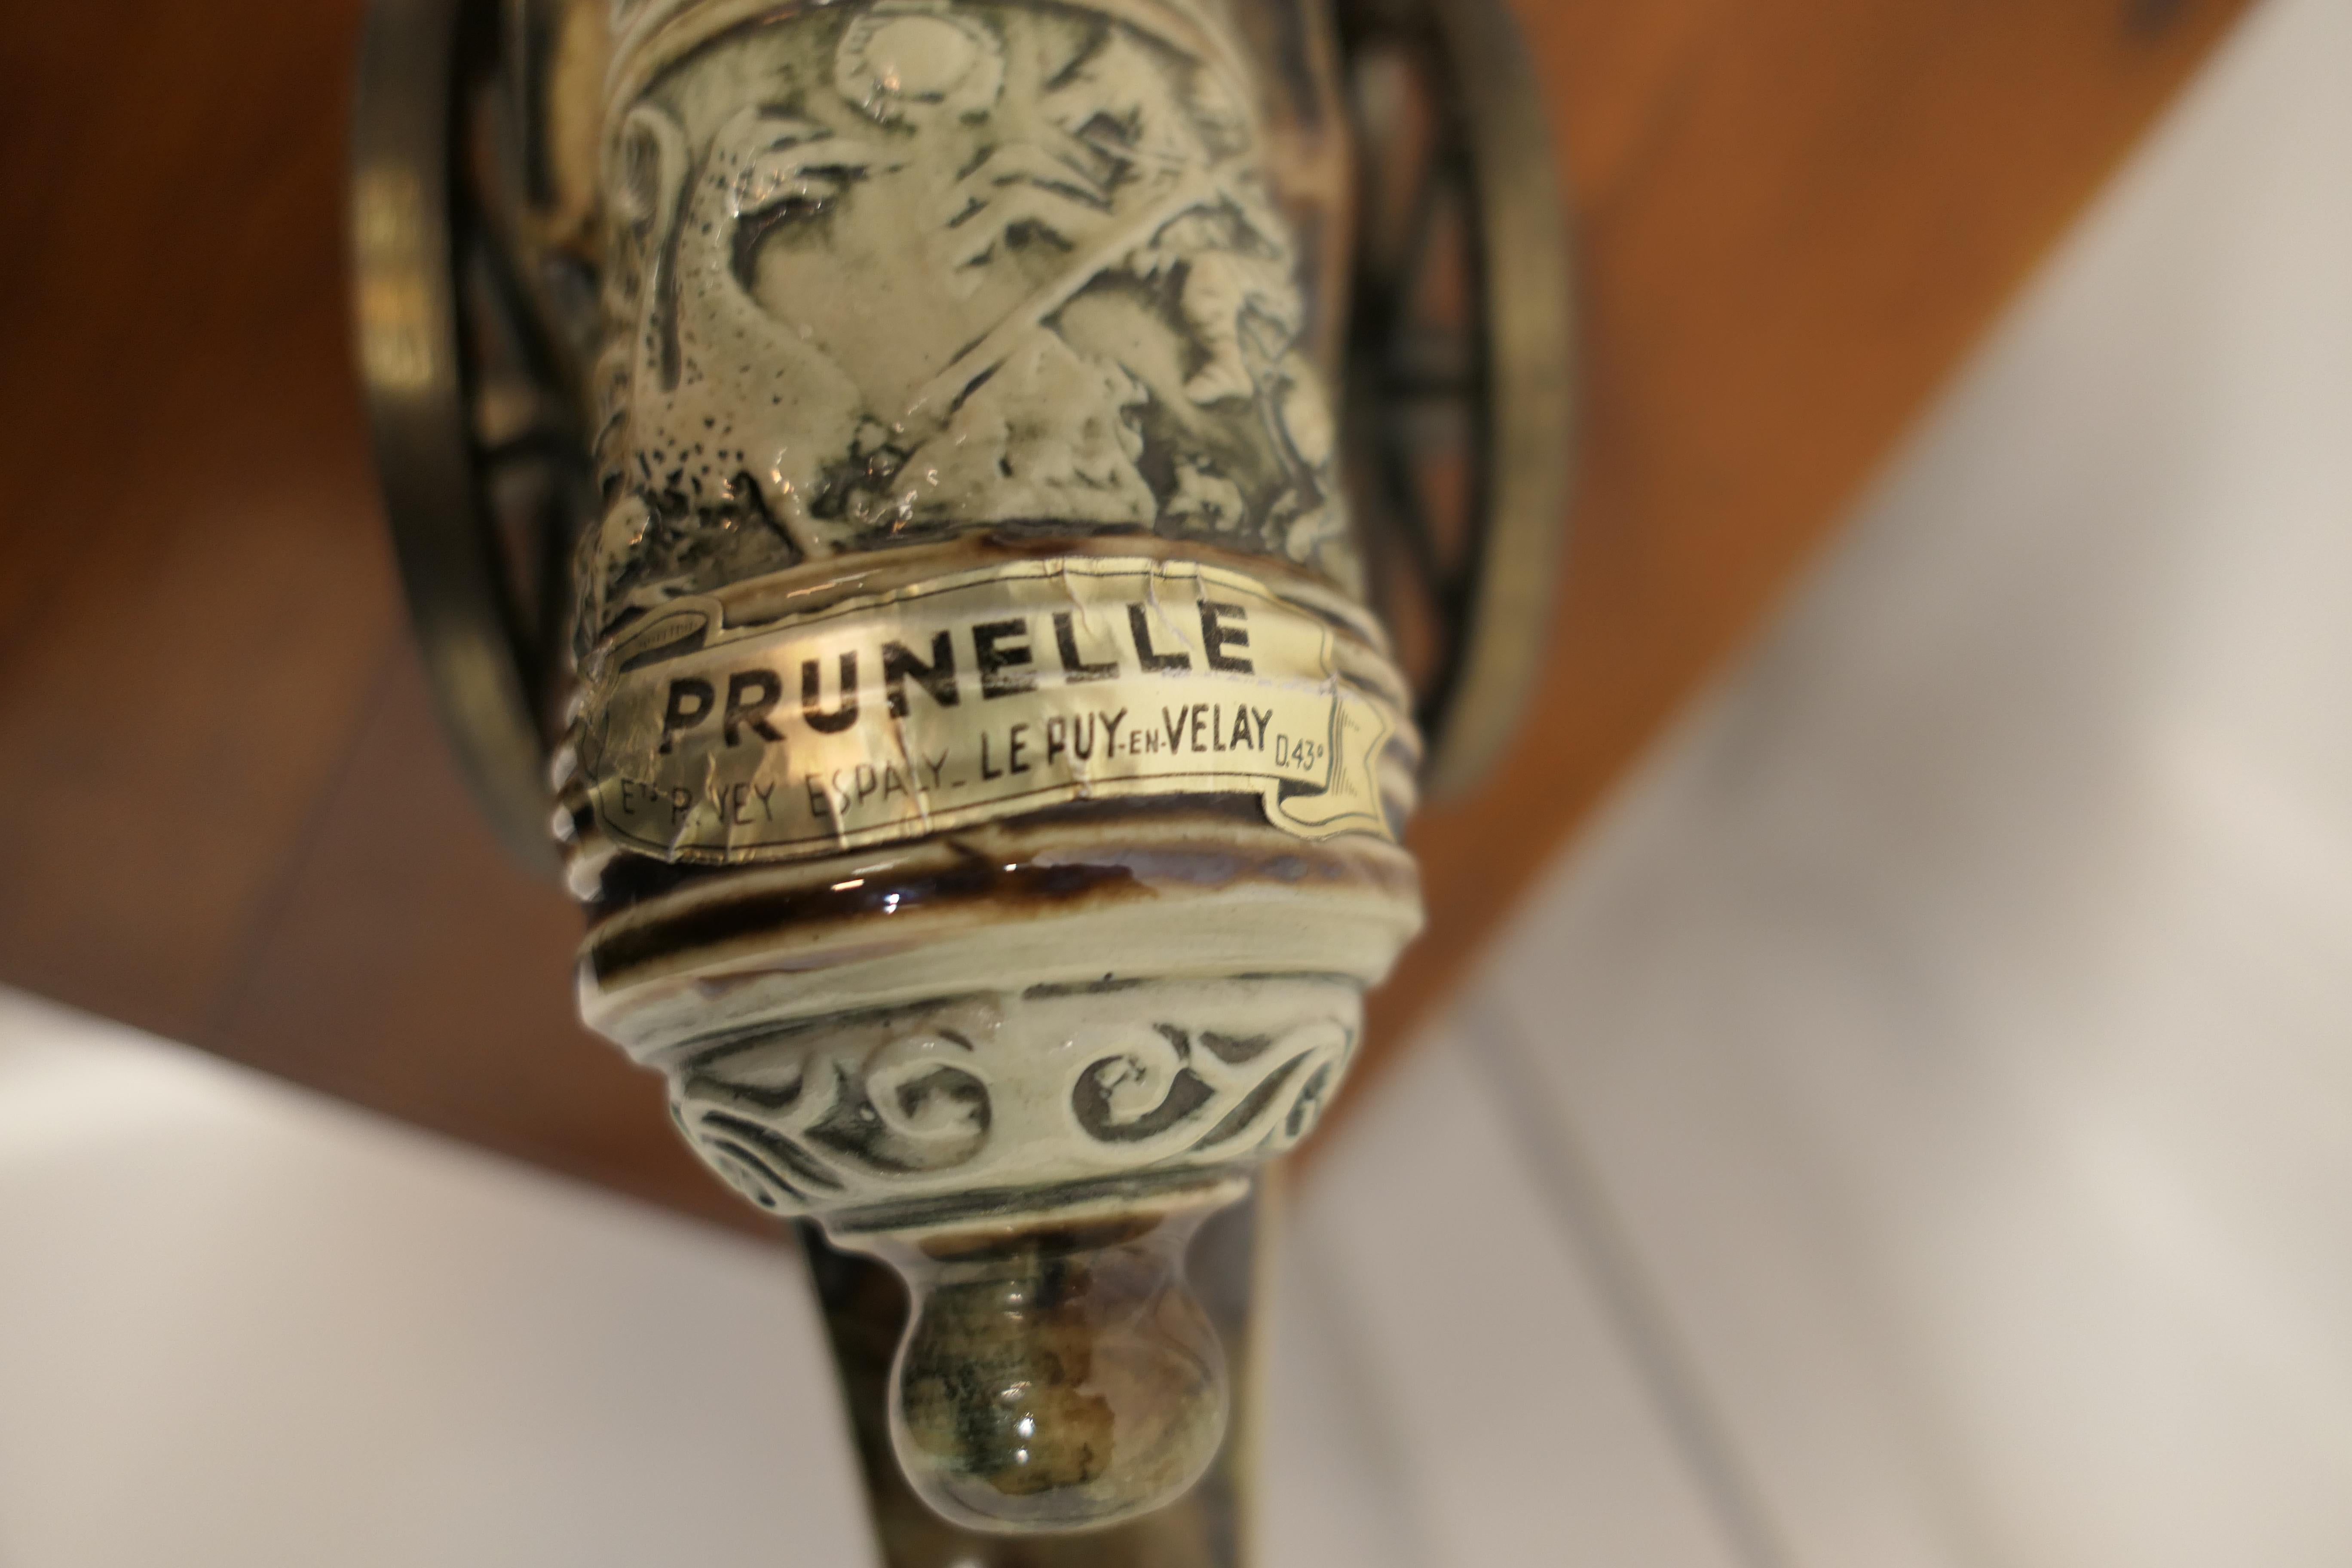 La Prunelle du Velay Bouteille à liqueur en grès en forme de canon 

Un charmant chariot à liqueur, fait en grès, un canon napoléonien décoratif monté sur des roues de chariot à canon en métal et oui, il roulera sur la table et lorsqu'il sera